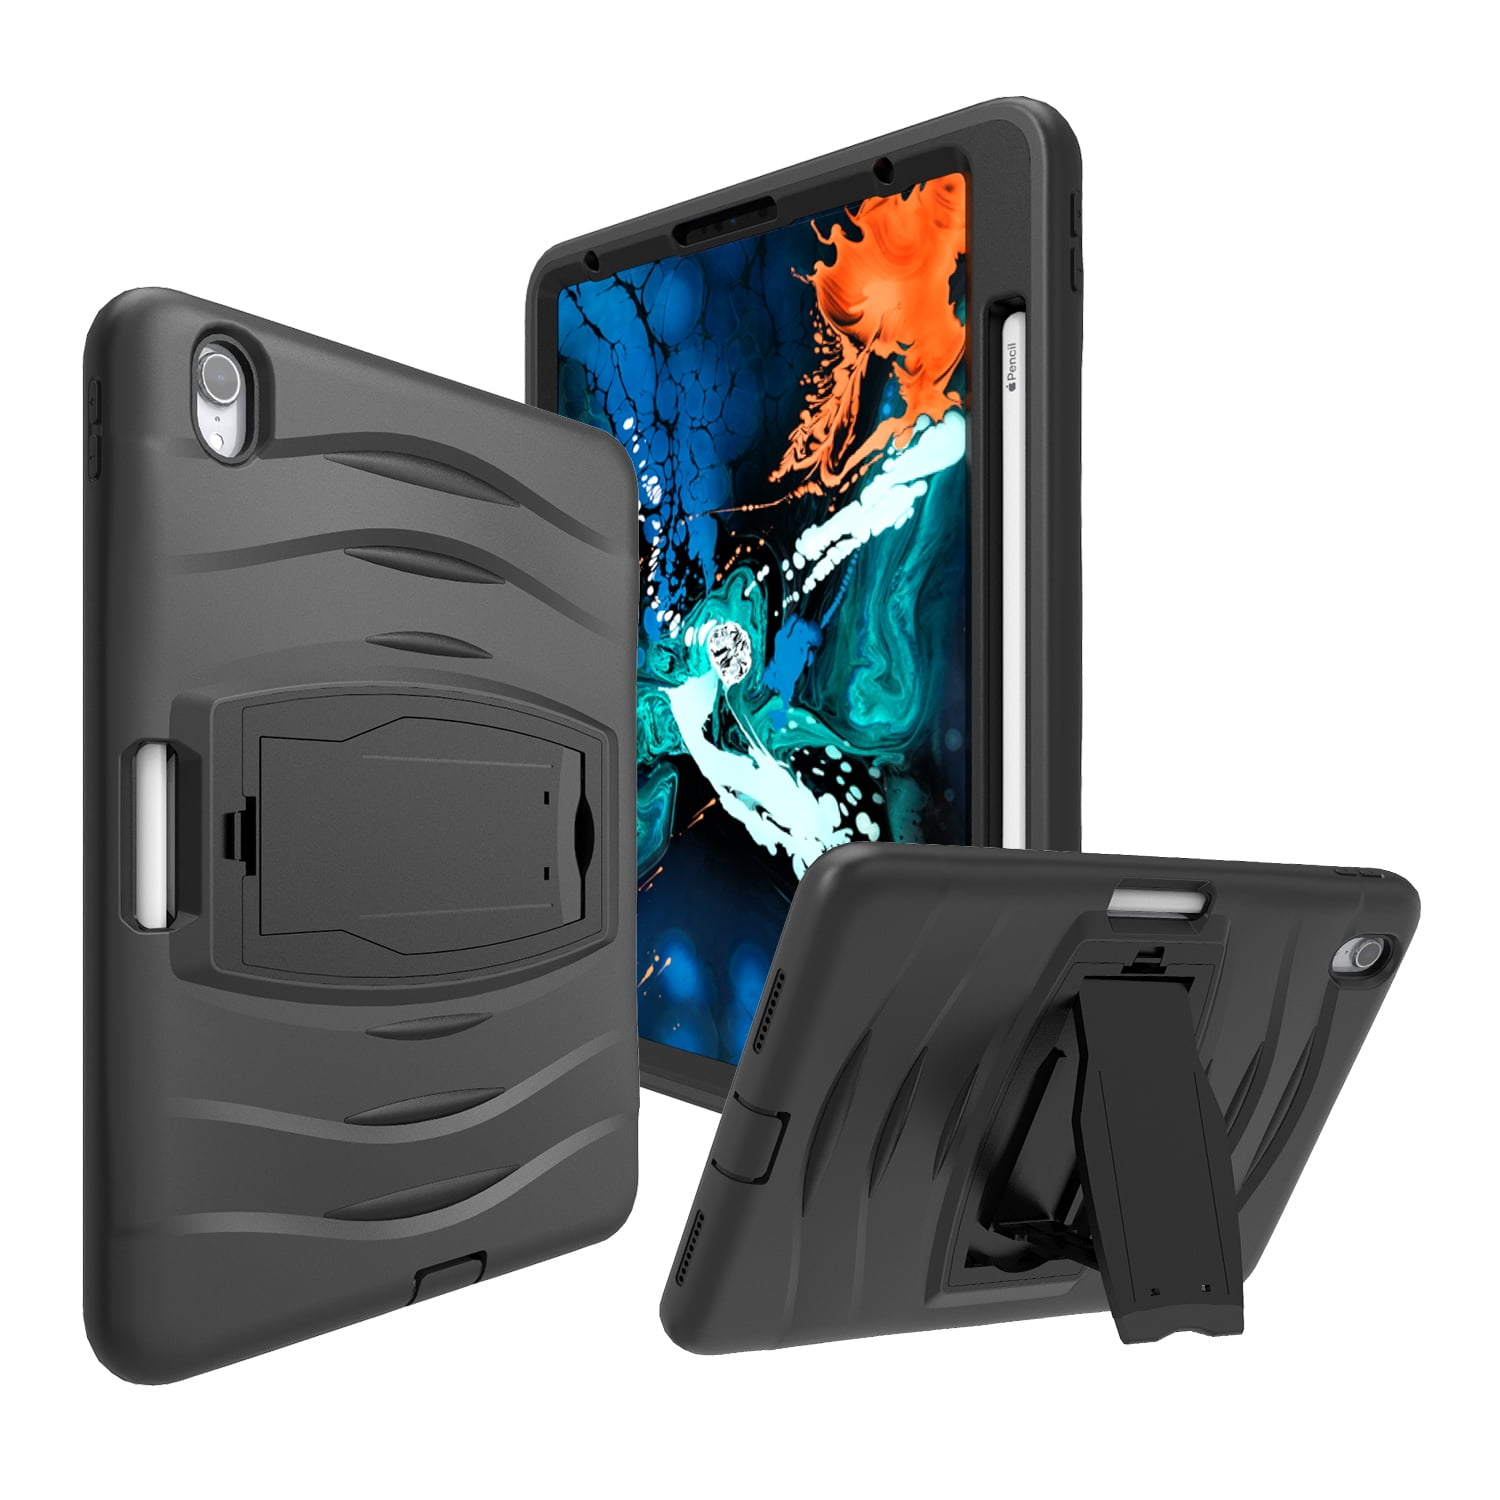 iPad Pro 11 Case, Fits 2018 iPad Pro 11 inch, KIQ Shockproof Heavy Duty